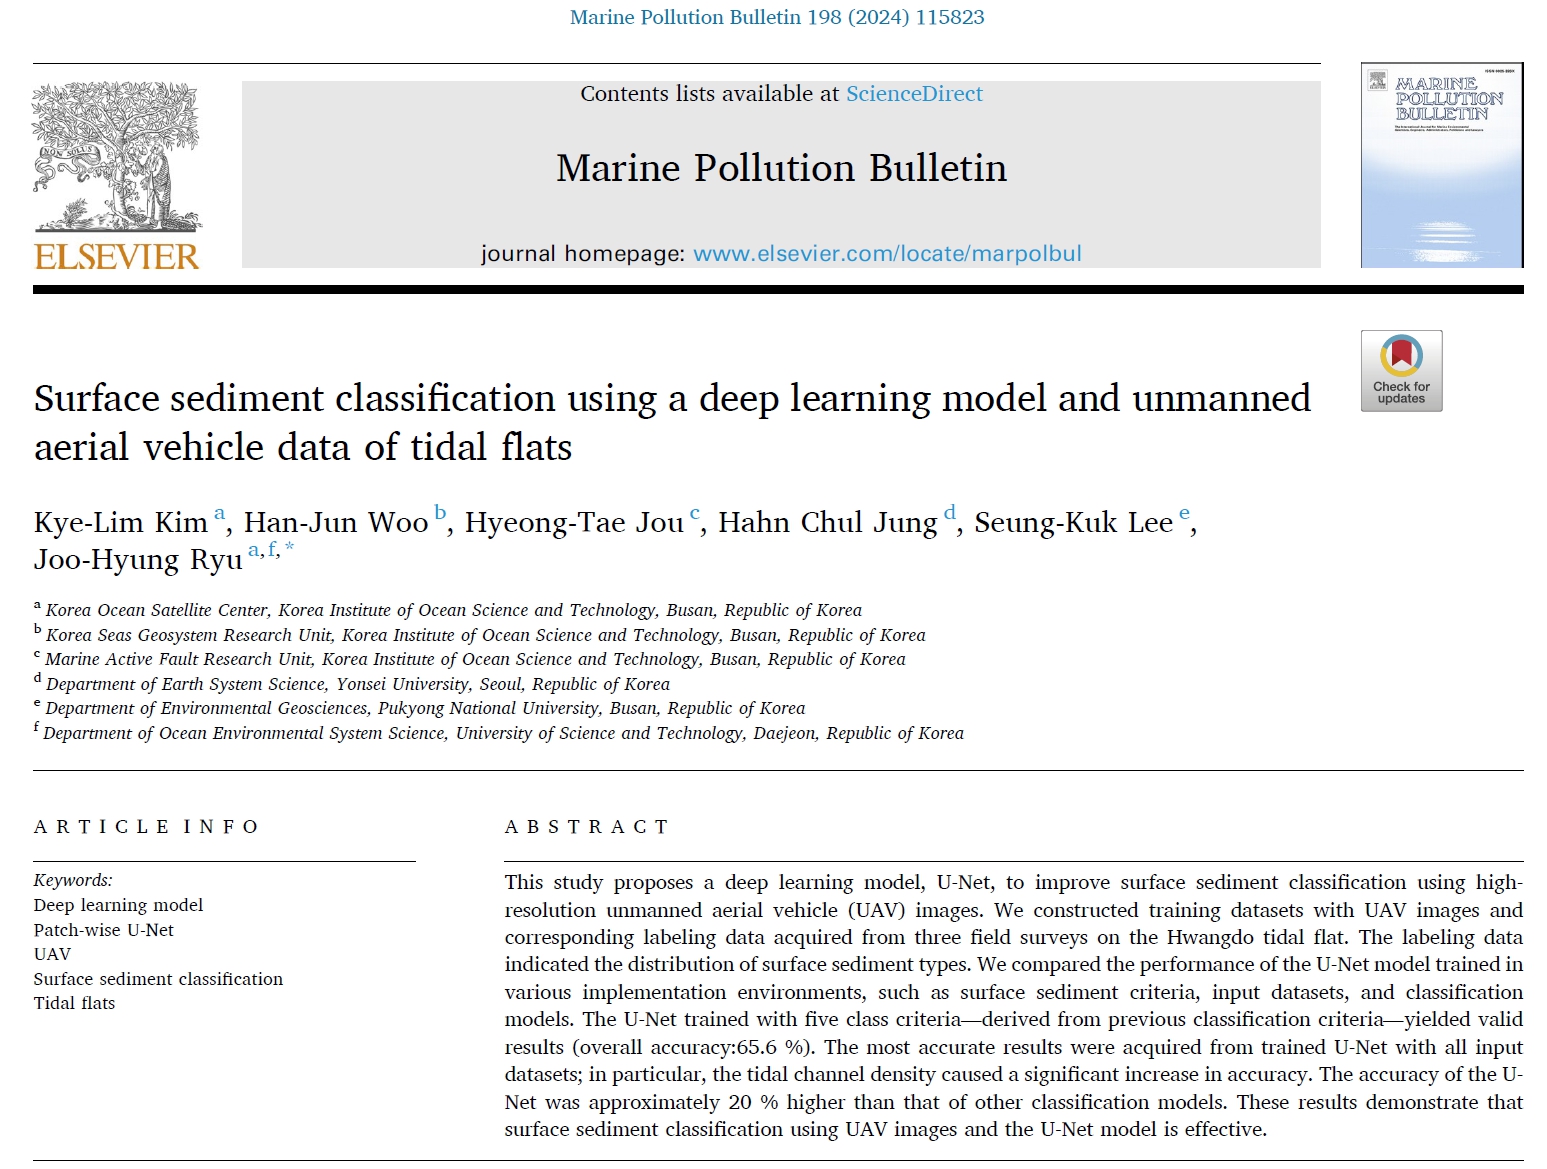 딥러닝 모델과 무인을 이용한 표층 퇴적물 분류(갯벌 퇴적물) 갯벌의 항공기 데이터 학술논문